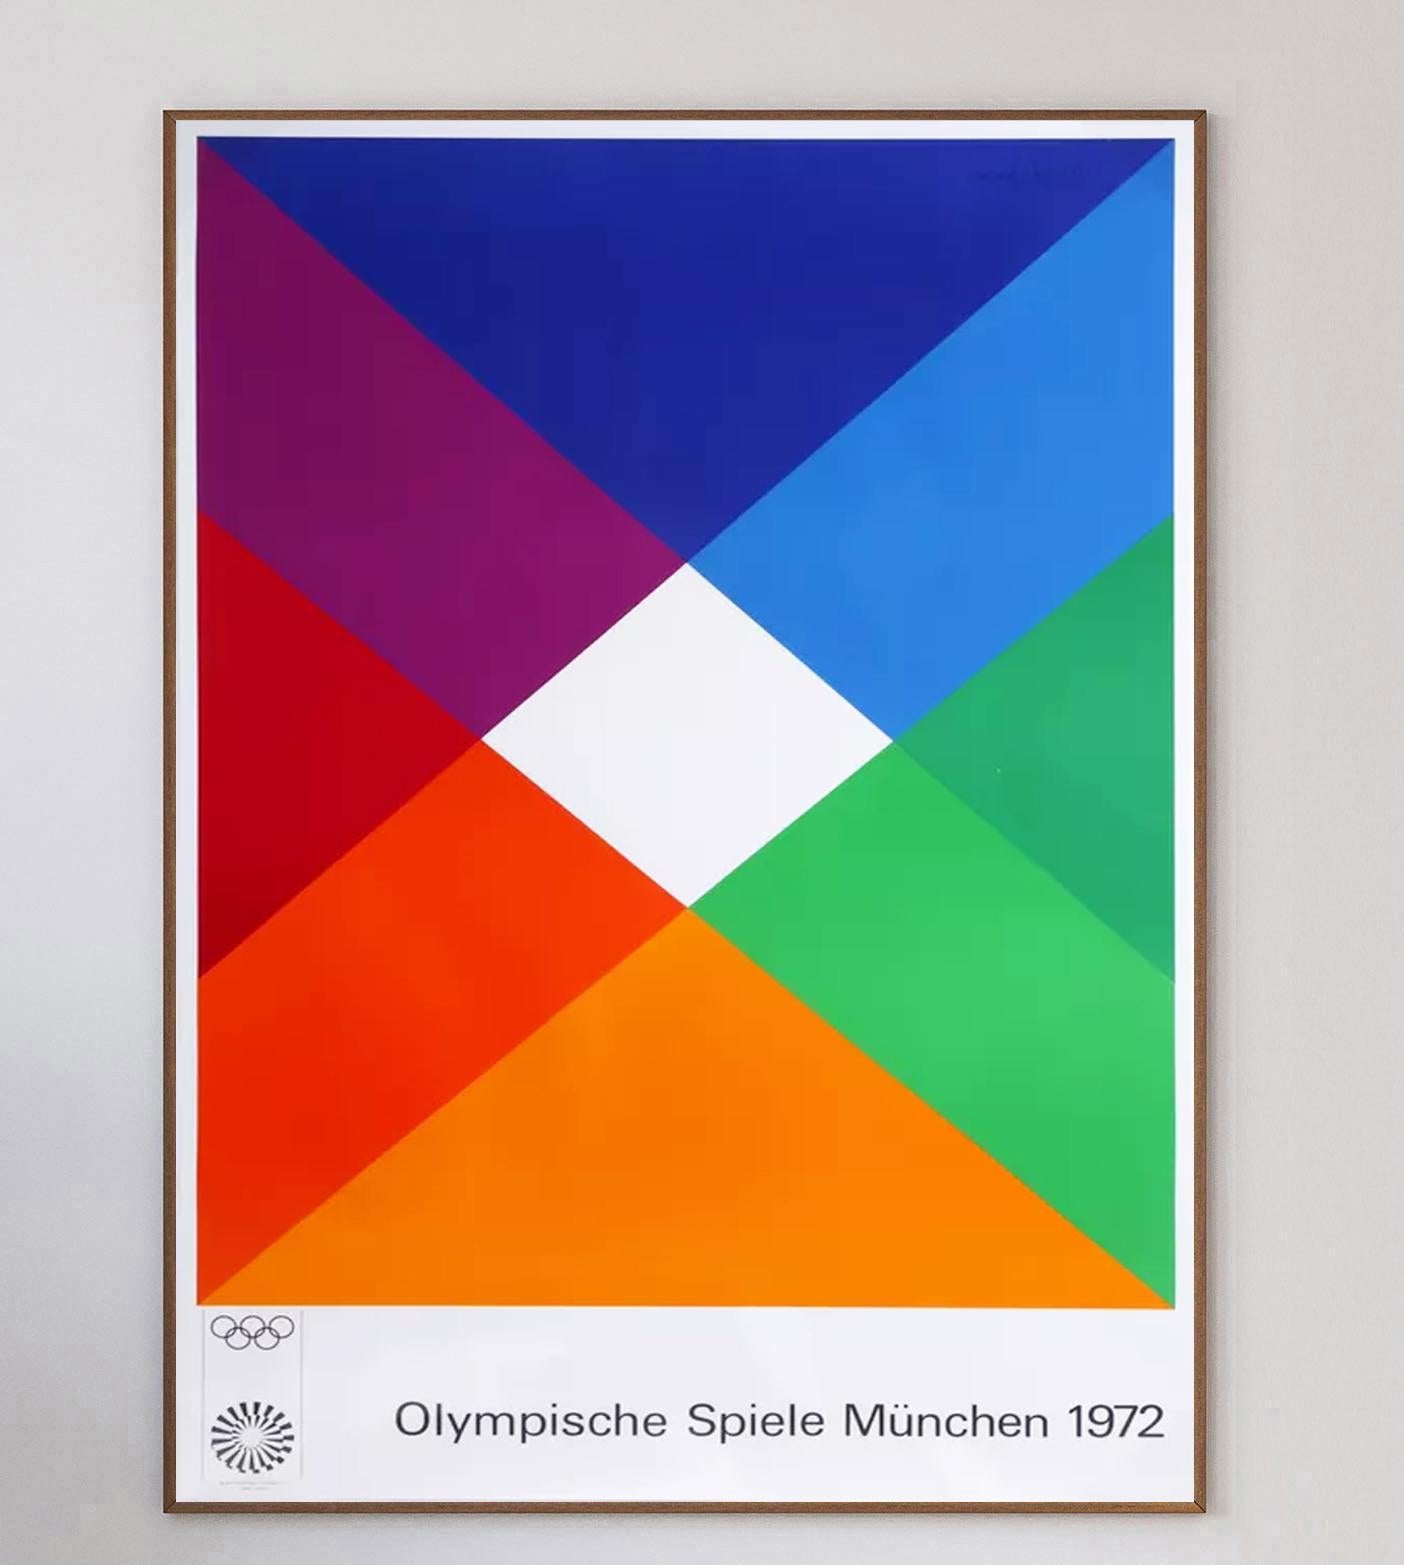 Der Schweizer Künstler und Grafikdesigner Max Bill war einer von 29 Künstlern, die mit der Gestaltung von Plakaten für die Olympischen Spiele 1972 in München beauftragt wurden. Im Vorfeld der Spiele 1972 beschloss das Organisationskomitee, eine